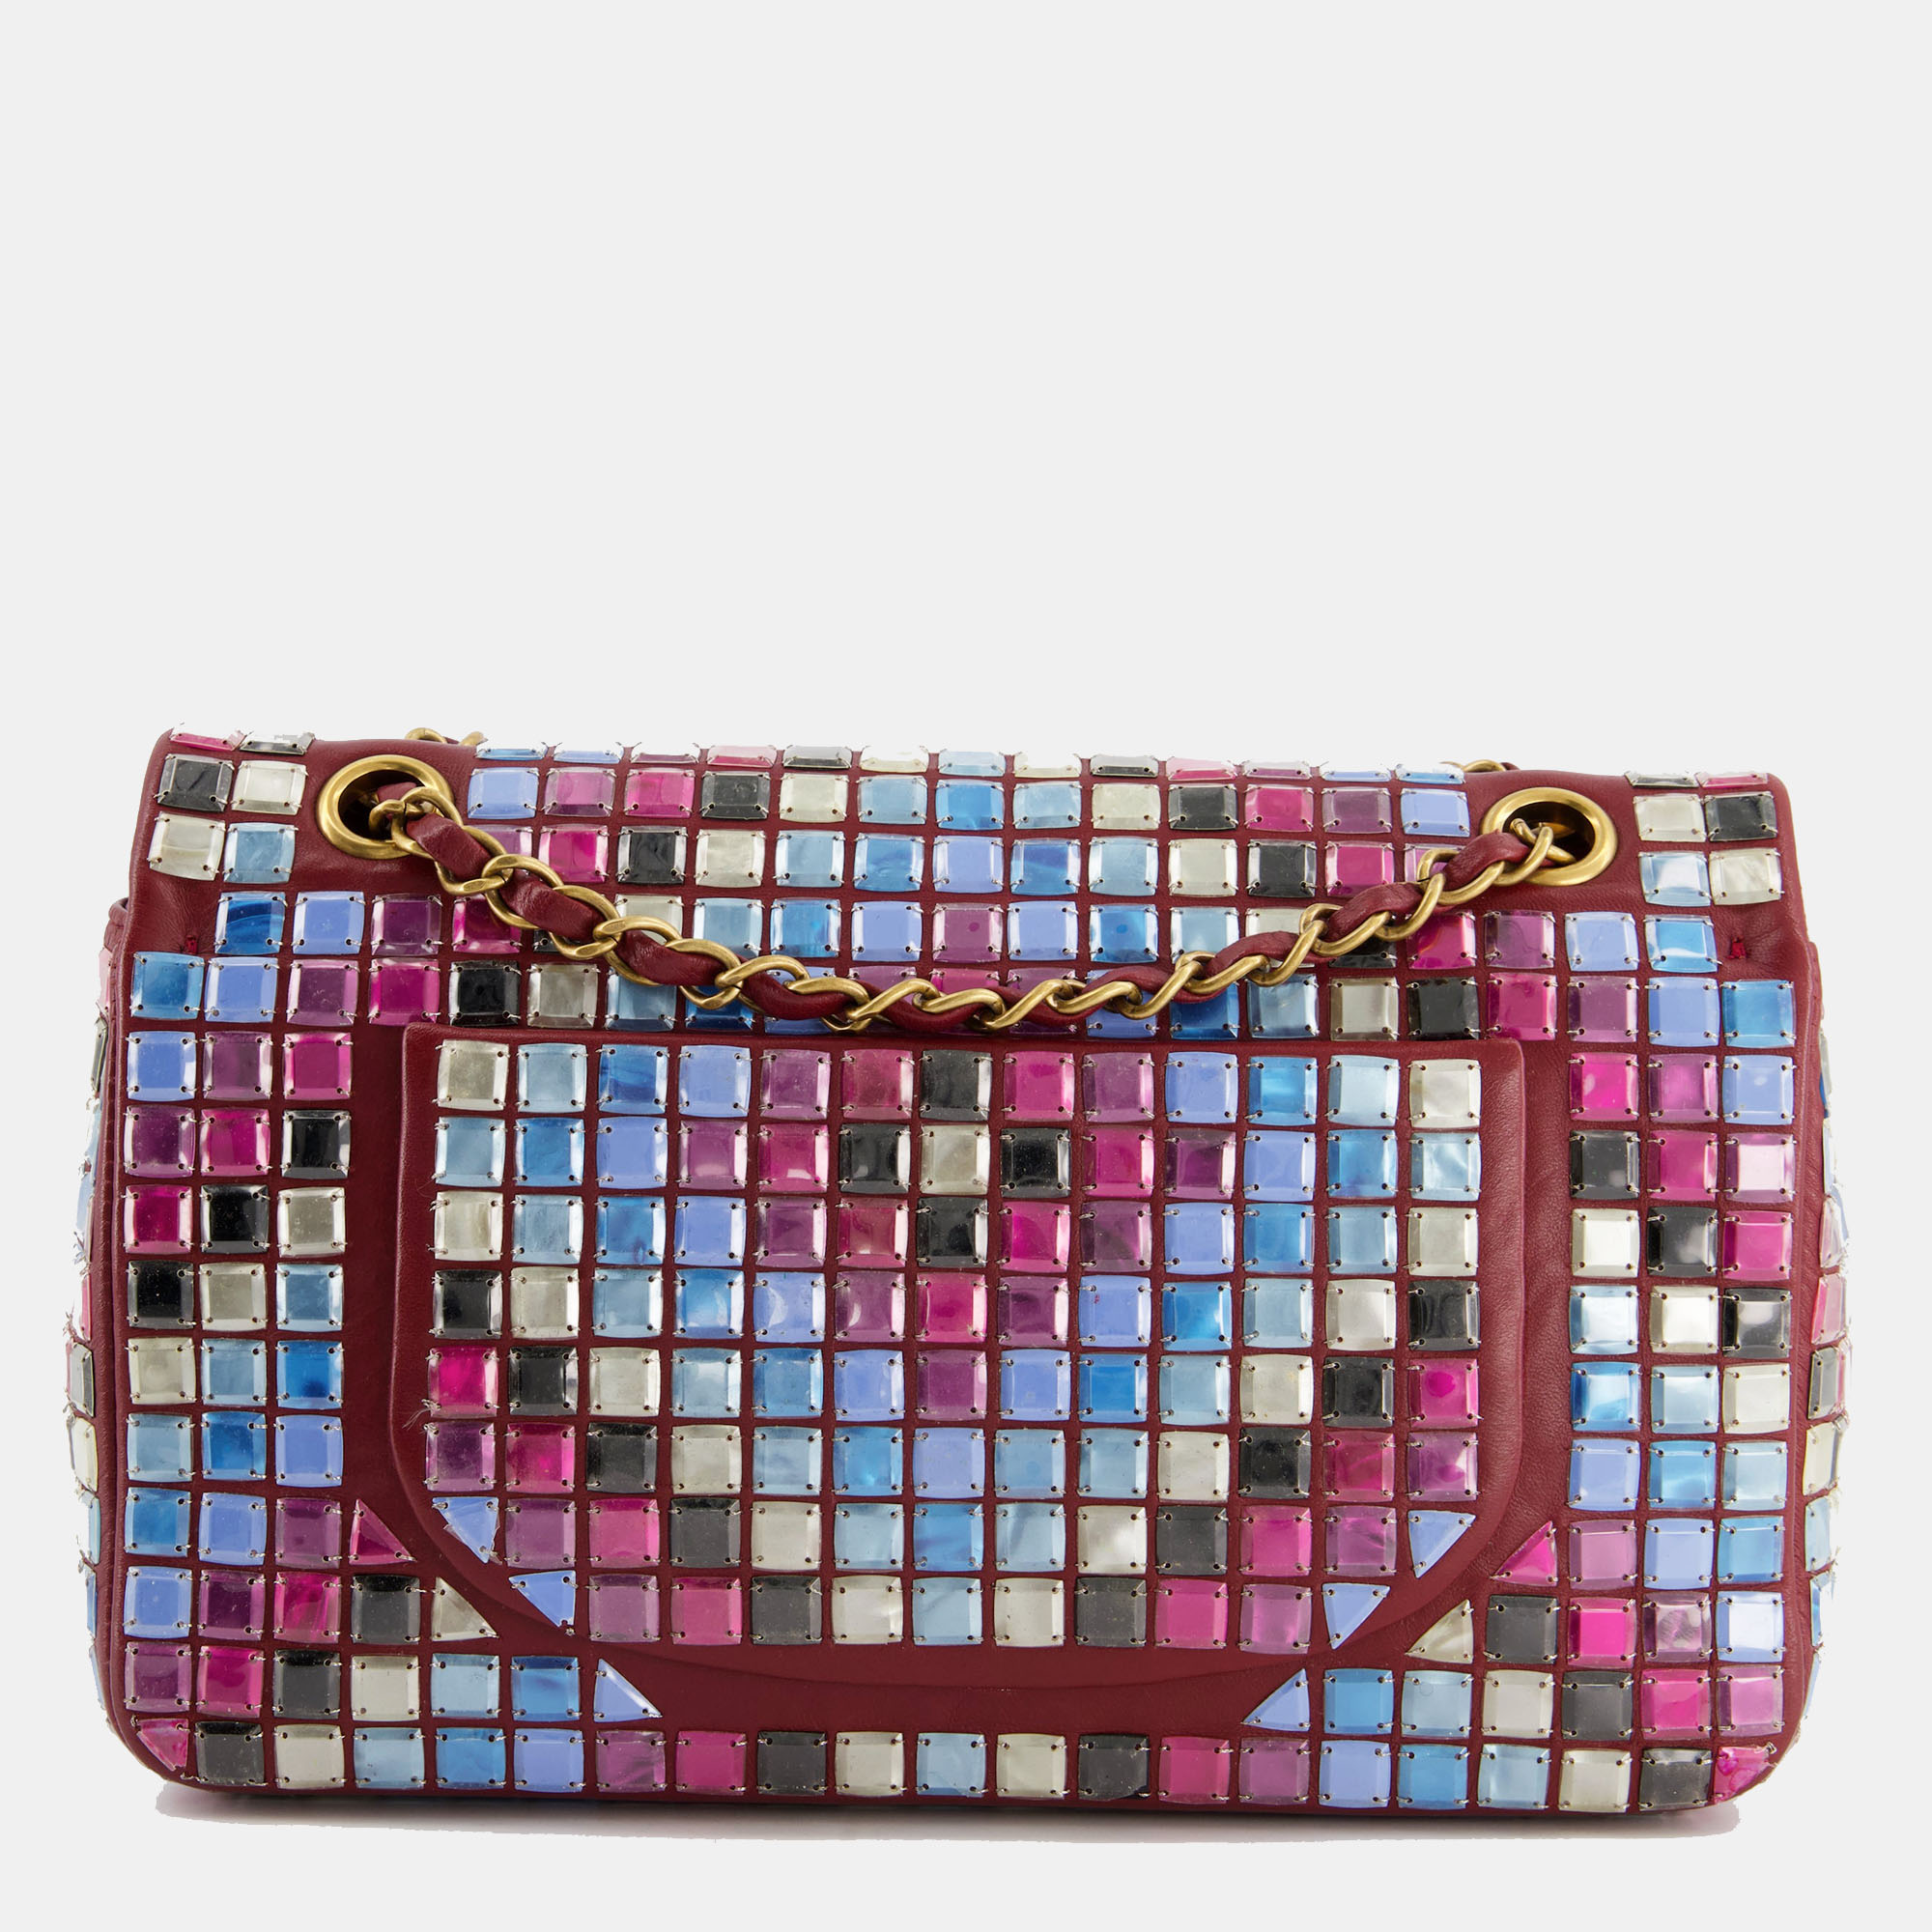 Chanel Burgundy Medium Classic Single Flap Bag Mosaic Embellished With Gold Hardware